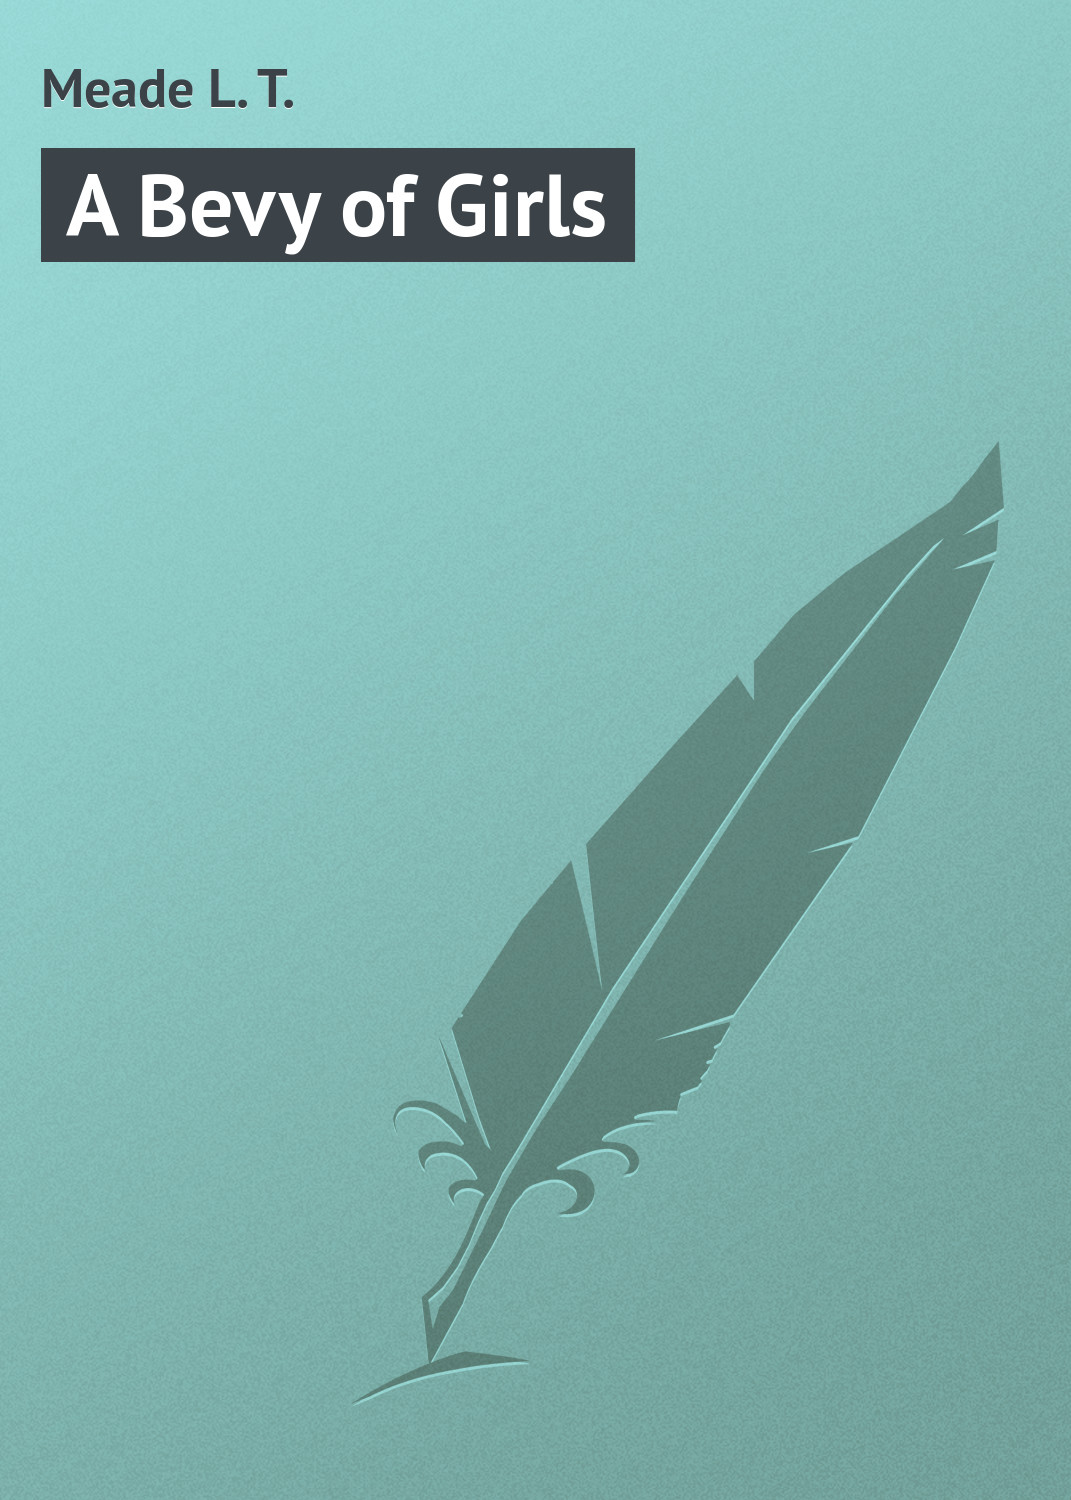 Книга A Bevy of Girls из серии , созданная L. Meade, может относится к жанру Зарубежная классика, Зарубежные детские книги. Стоимость электронной книги A Bevy of Girls с идентификатором 23164115 составляет 5.99 руб.